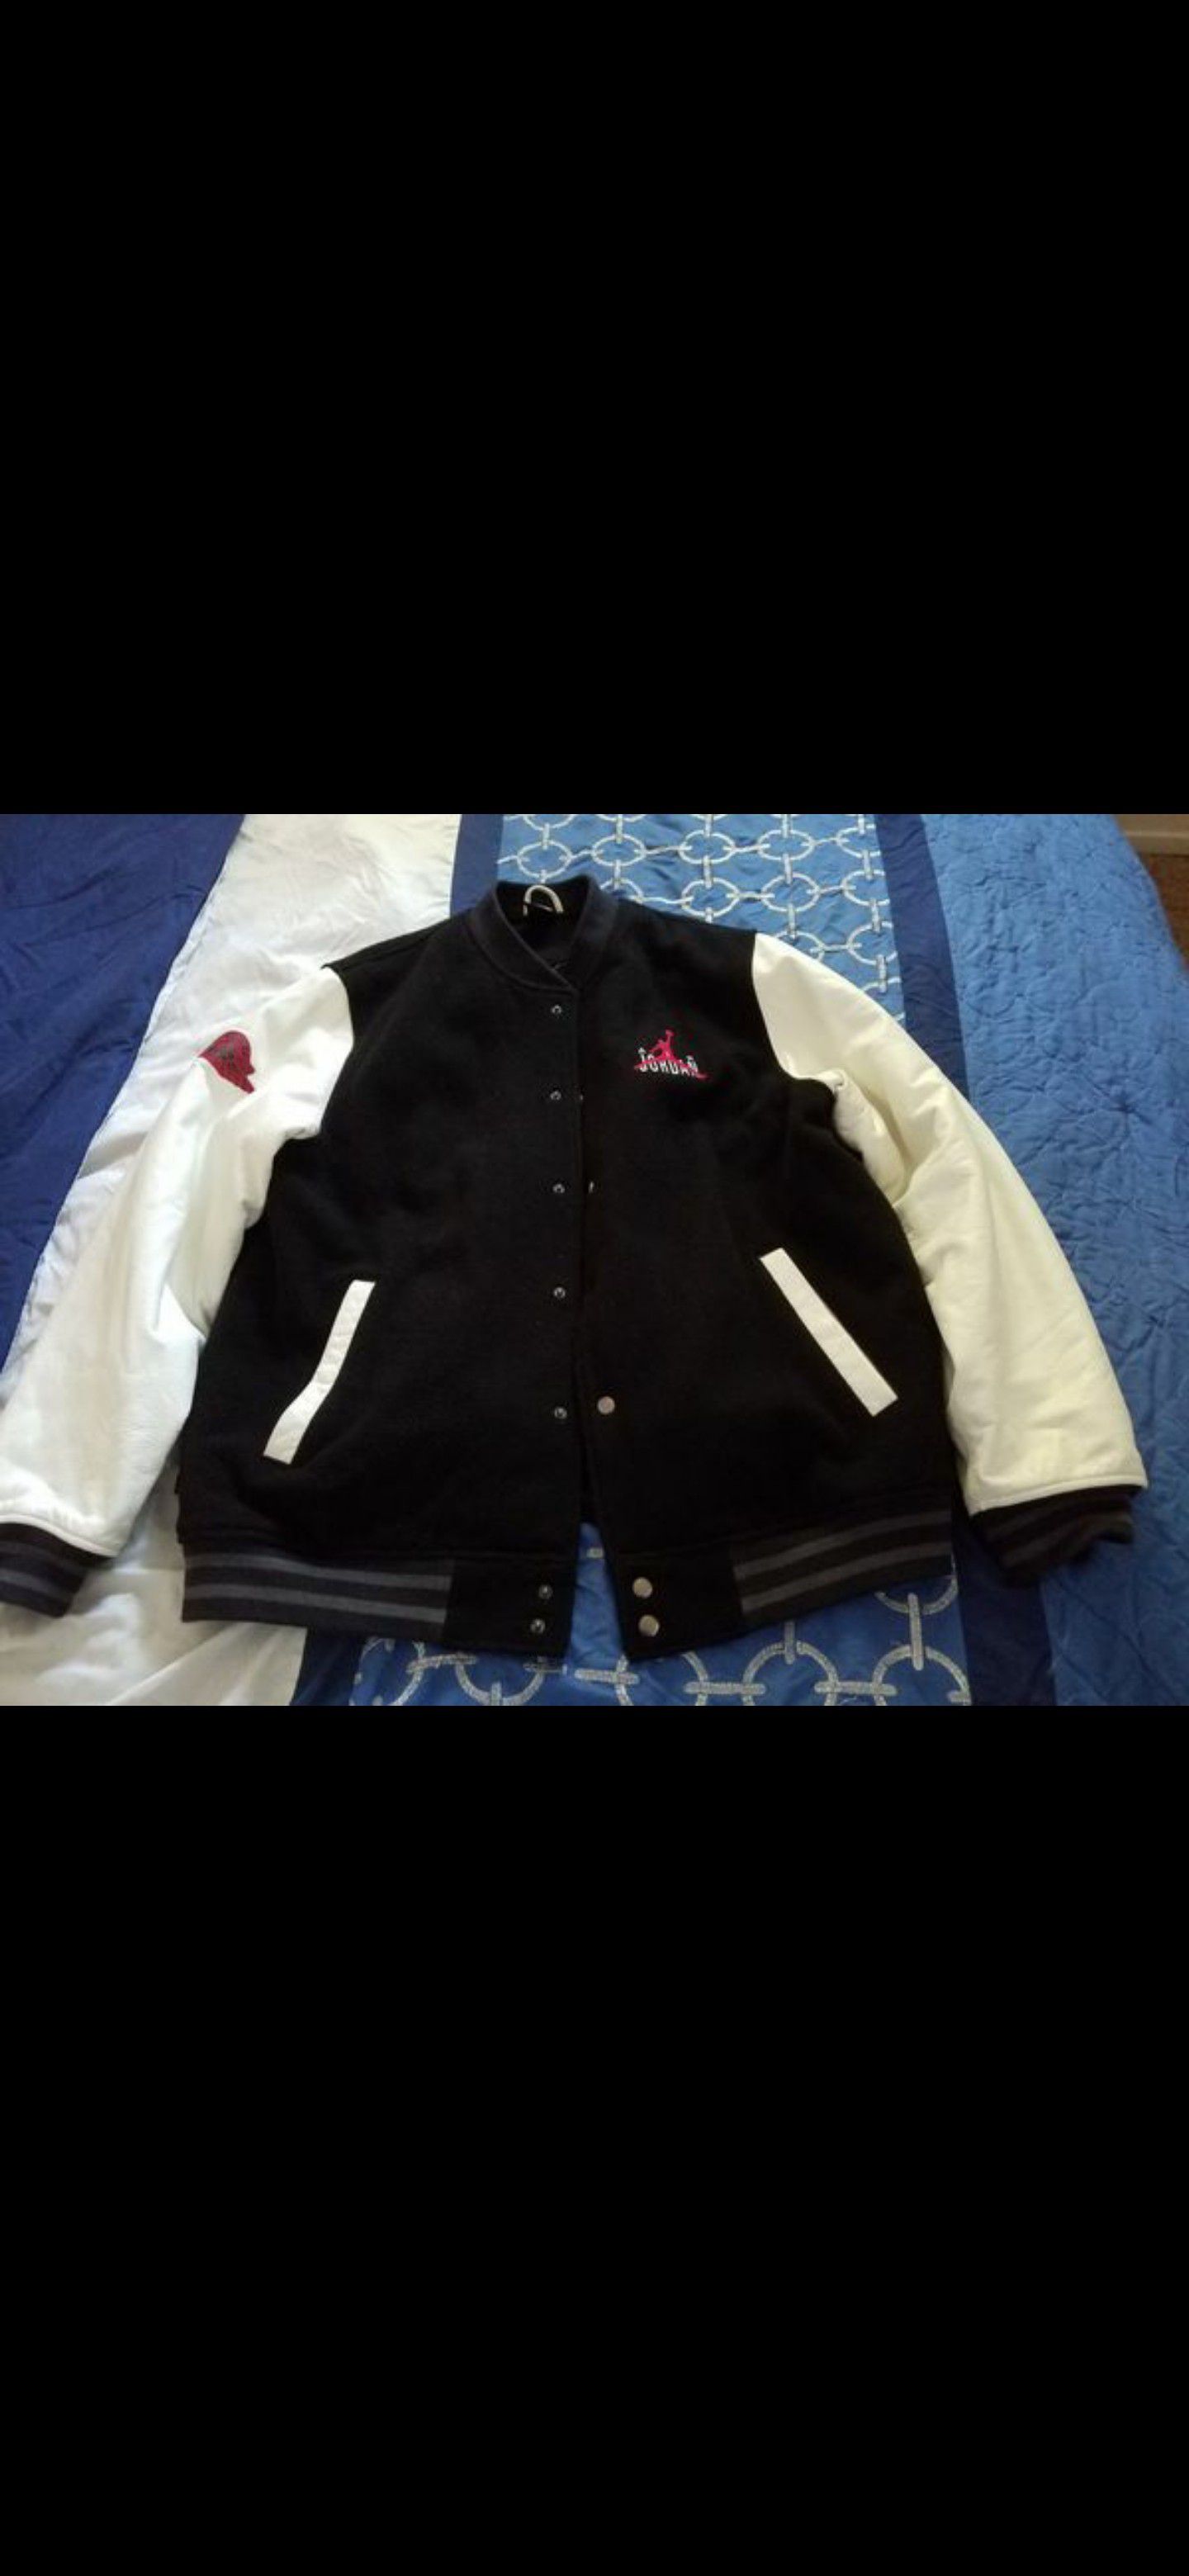 Jordan jacket leather size large